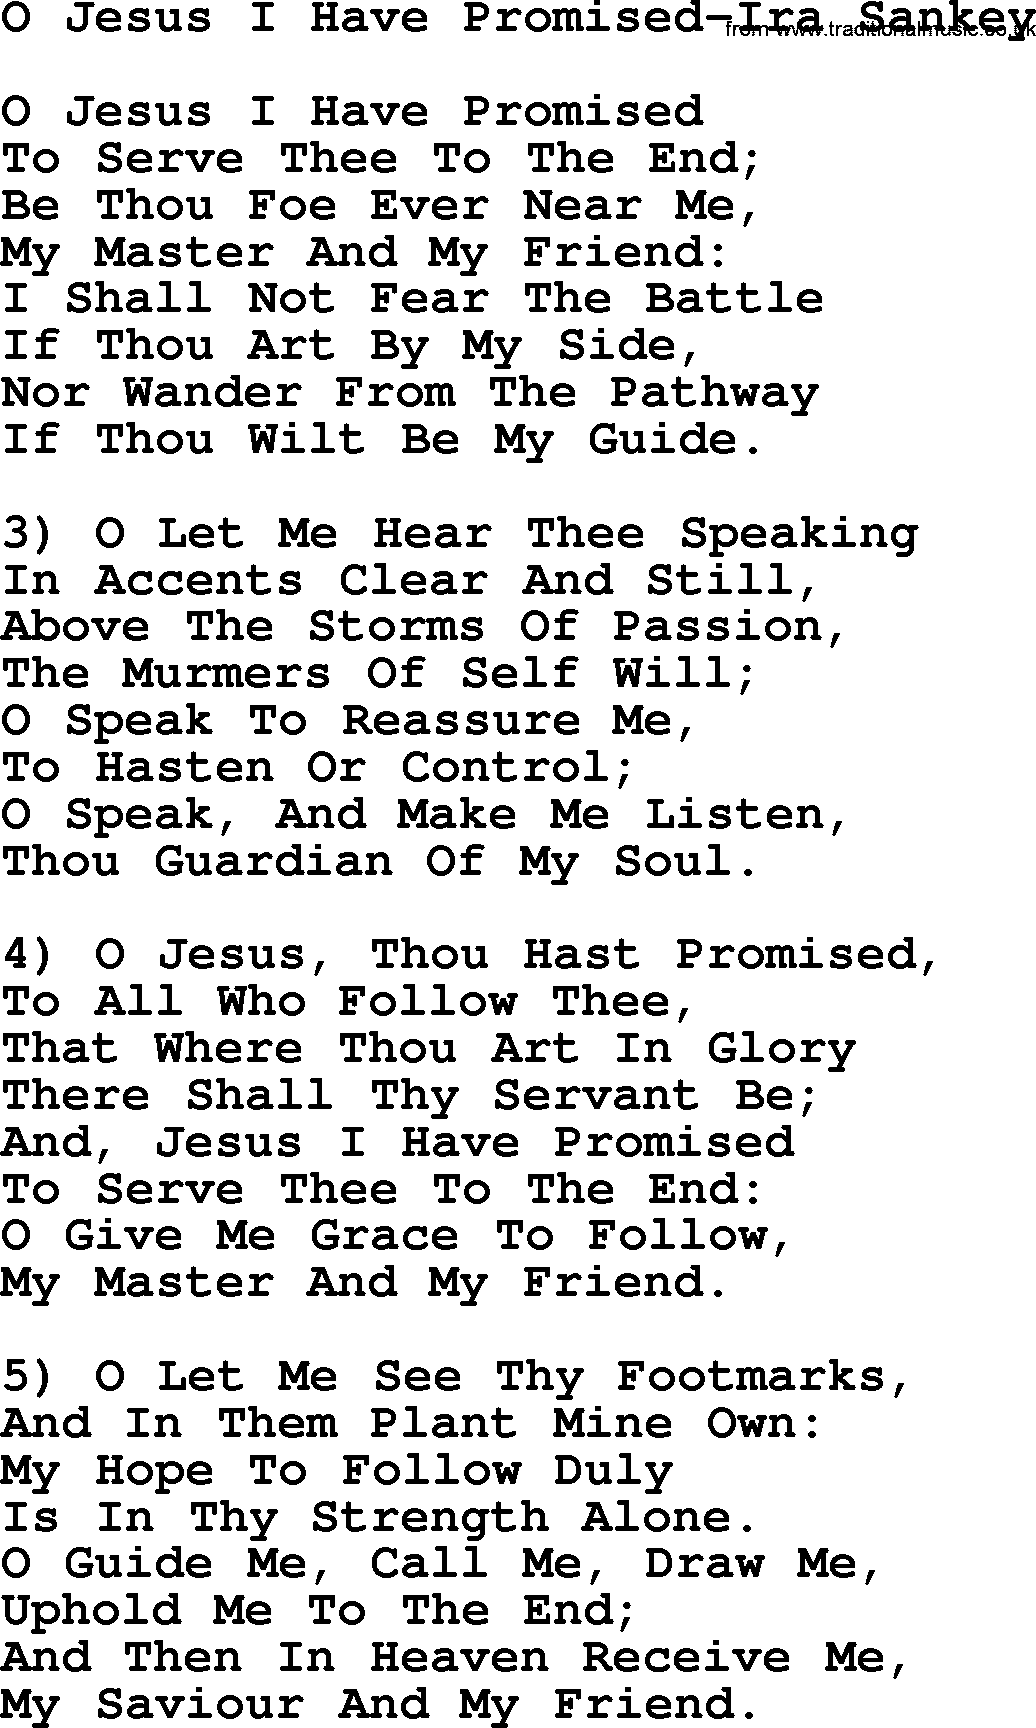 Ira Sankey hymn: O Jesus I Have Promised-Ira Sankey, lyrics